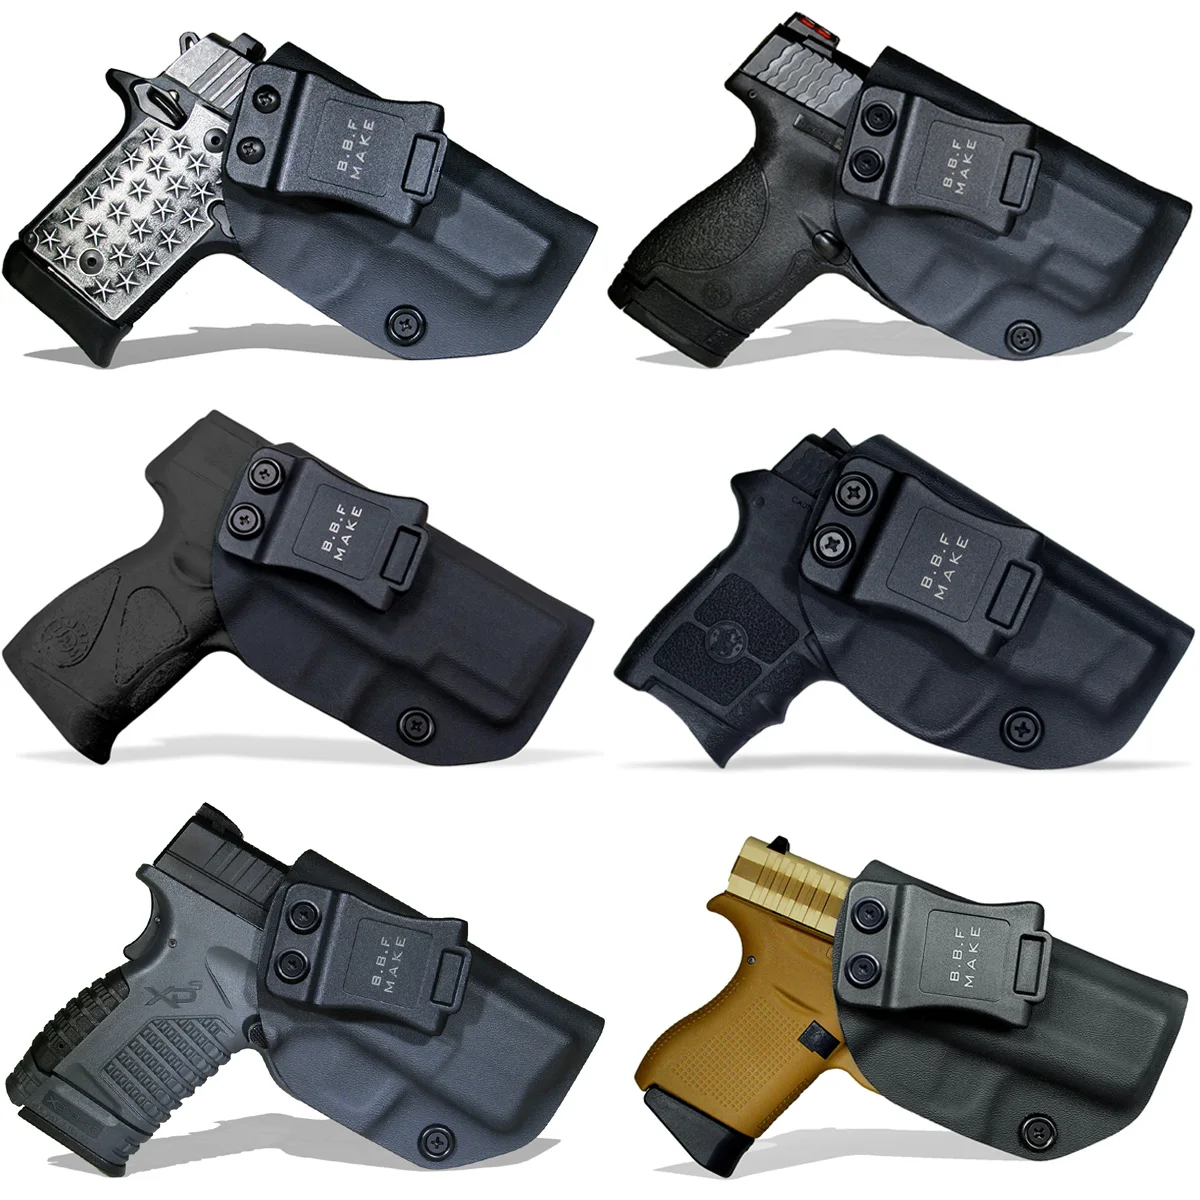 
OEM/Wholesale IWB KYDEX Holster for Taurus PT805 PT800 PT840 PT845 PT809 PT140 G2C Colt M1911 Inside Concealed Gun Holster 